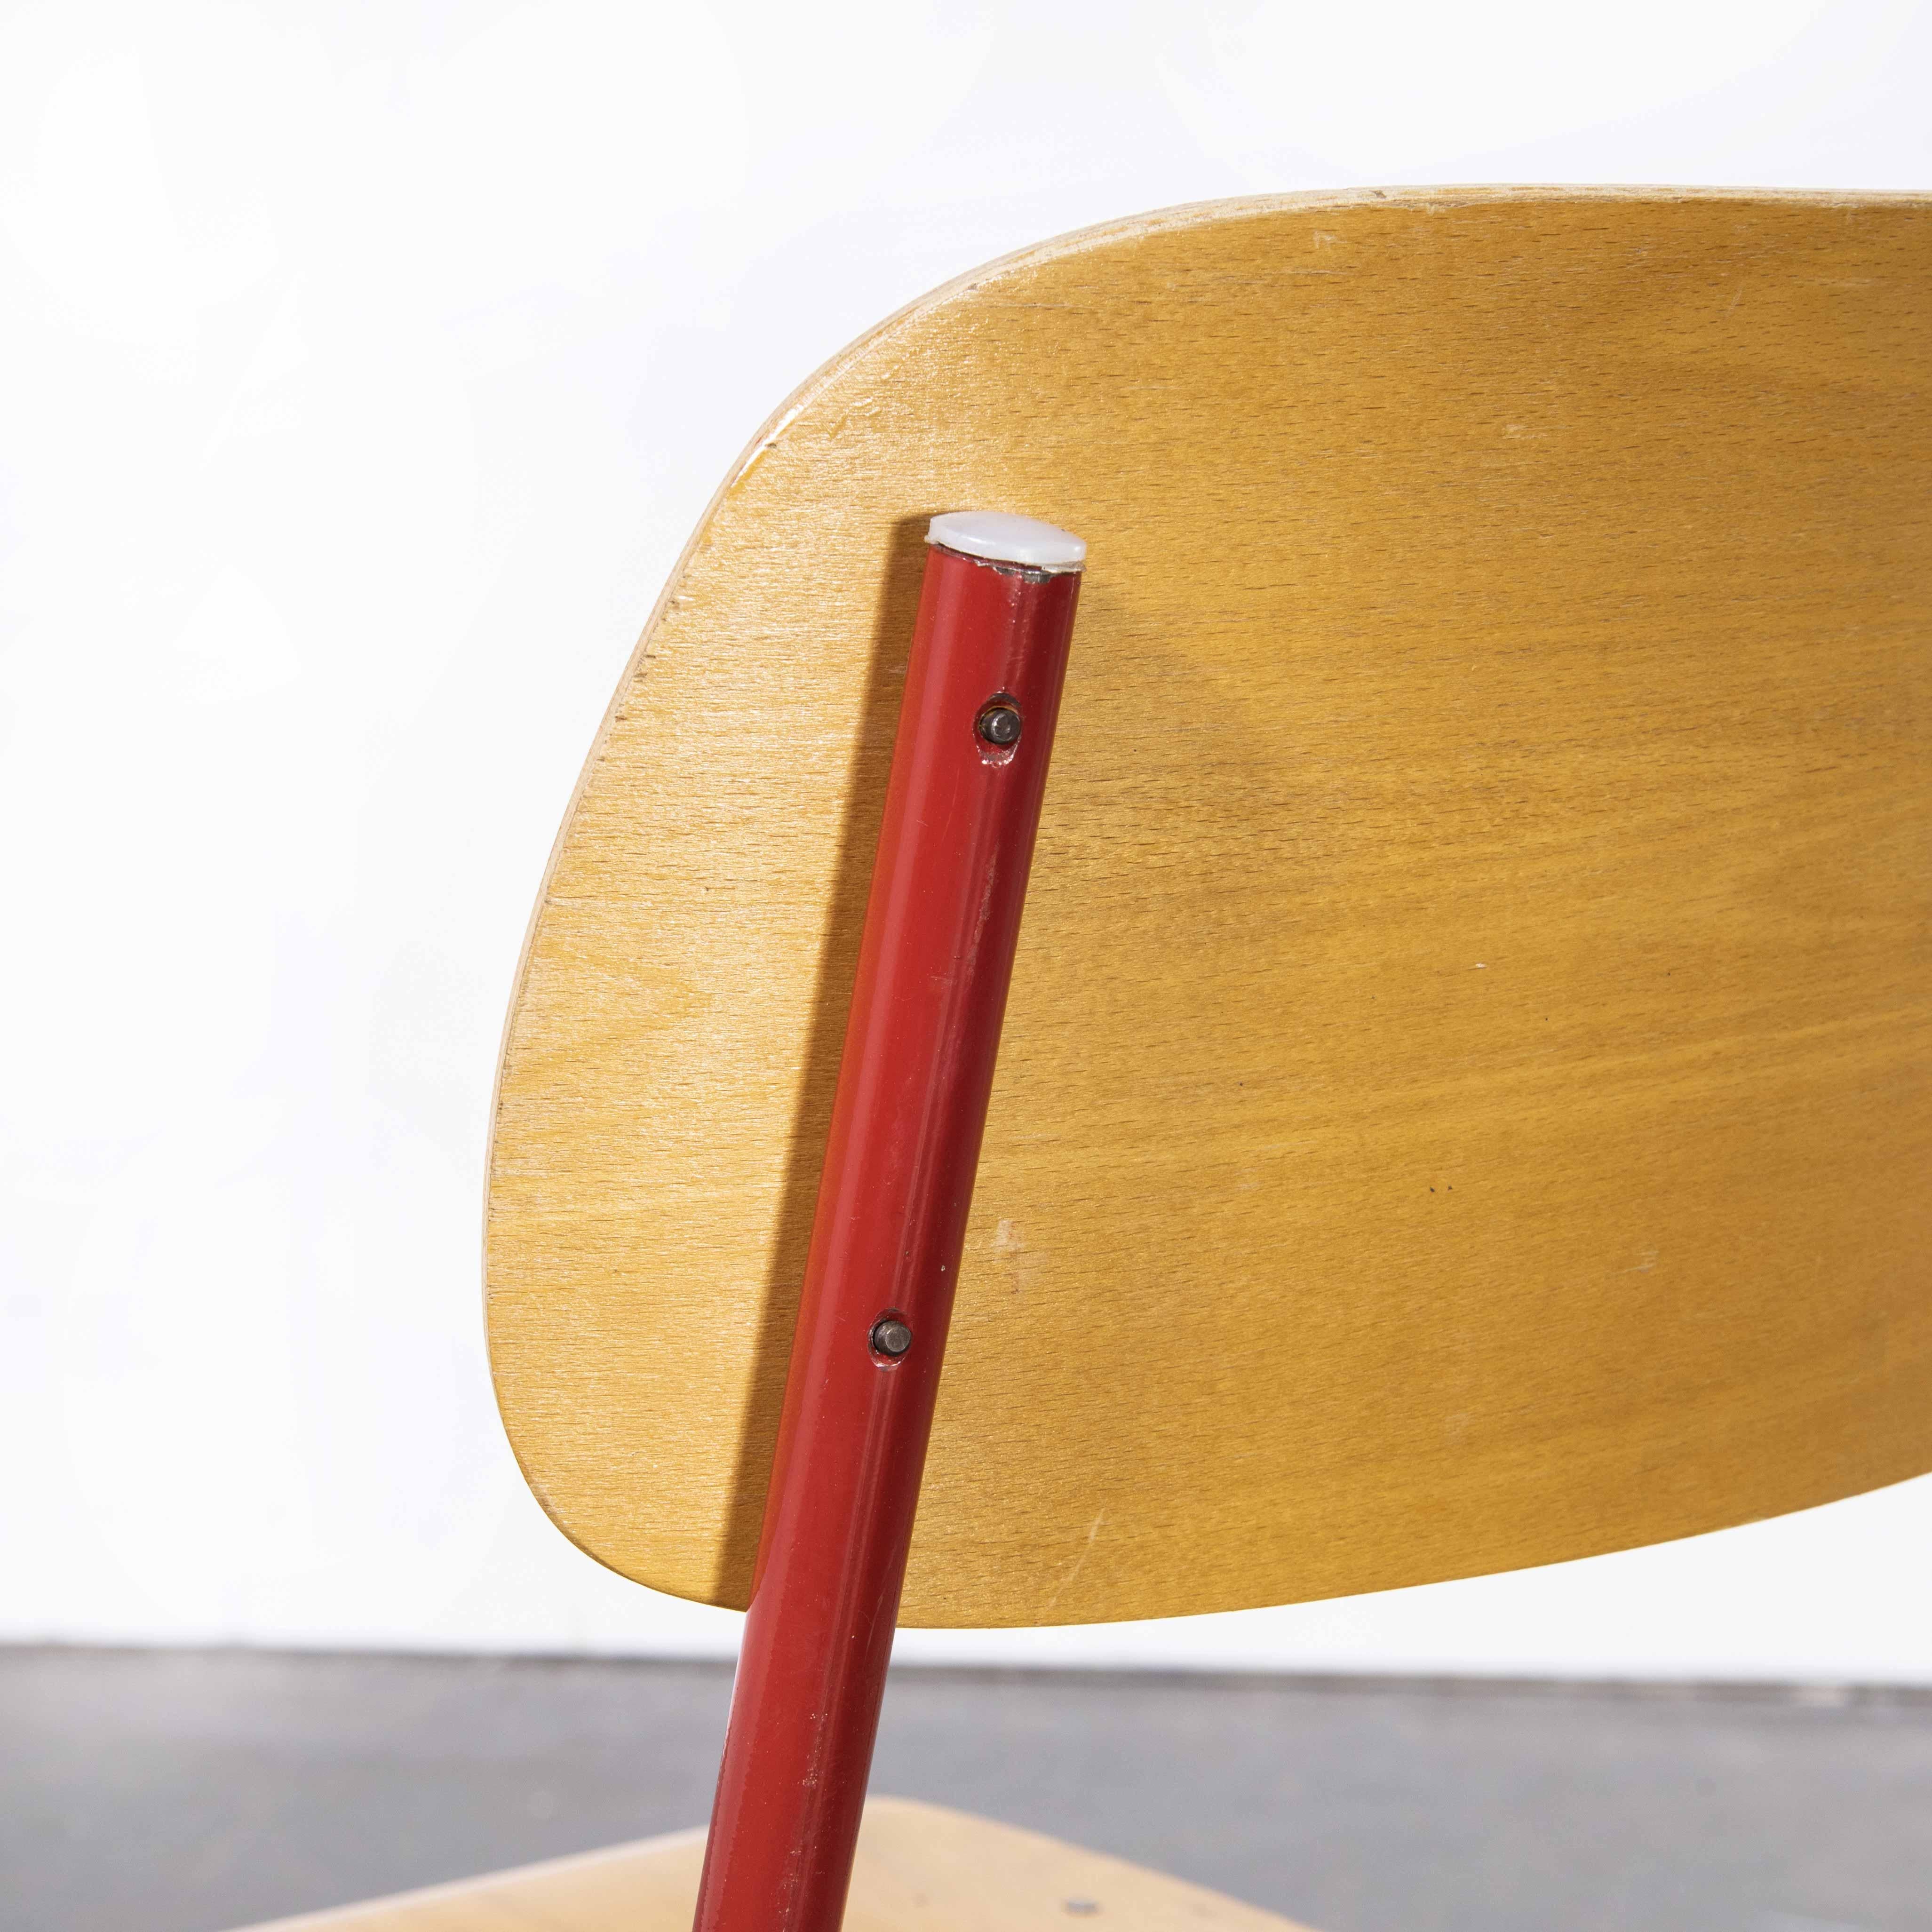 chaises empilables industrielles tchèques des années 1970 - rouge - différentes quantités disponibles
chaises empilables industrielles tchèques des années 1970 - rouge - différentes quantités disponibles. Chaises robustes de style industriel